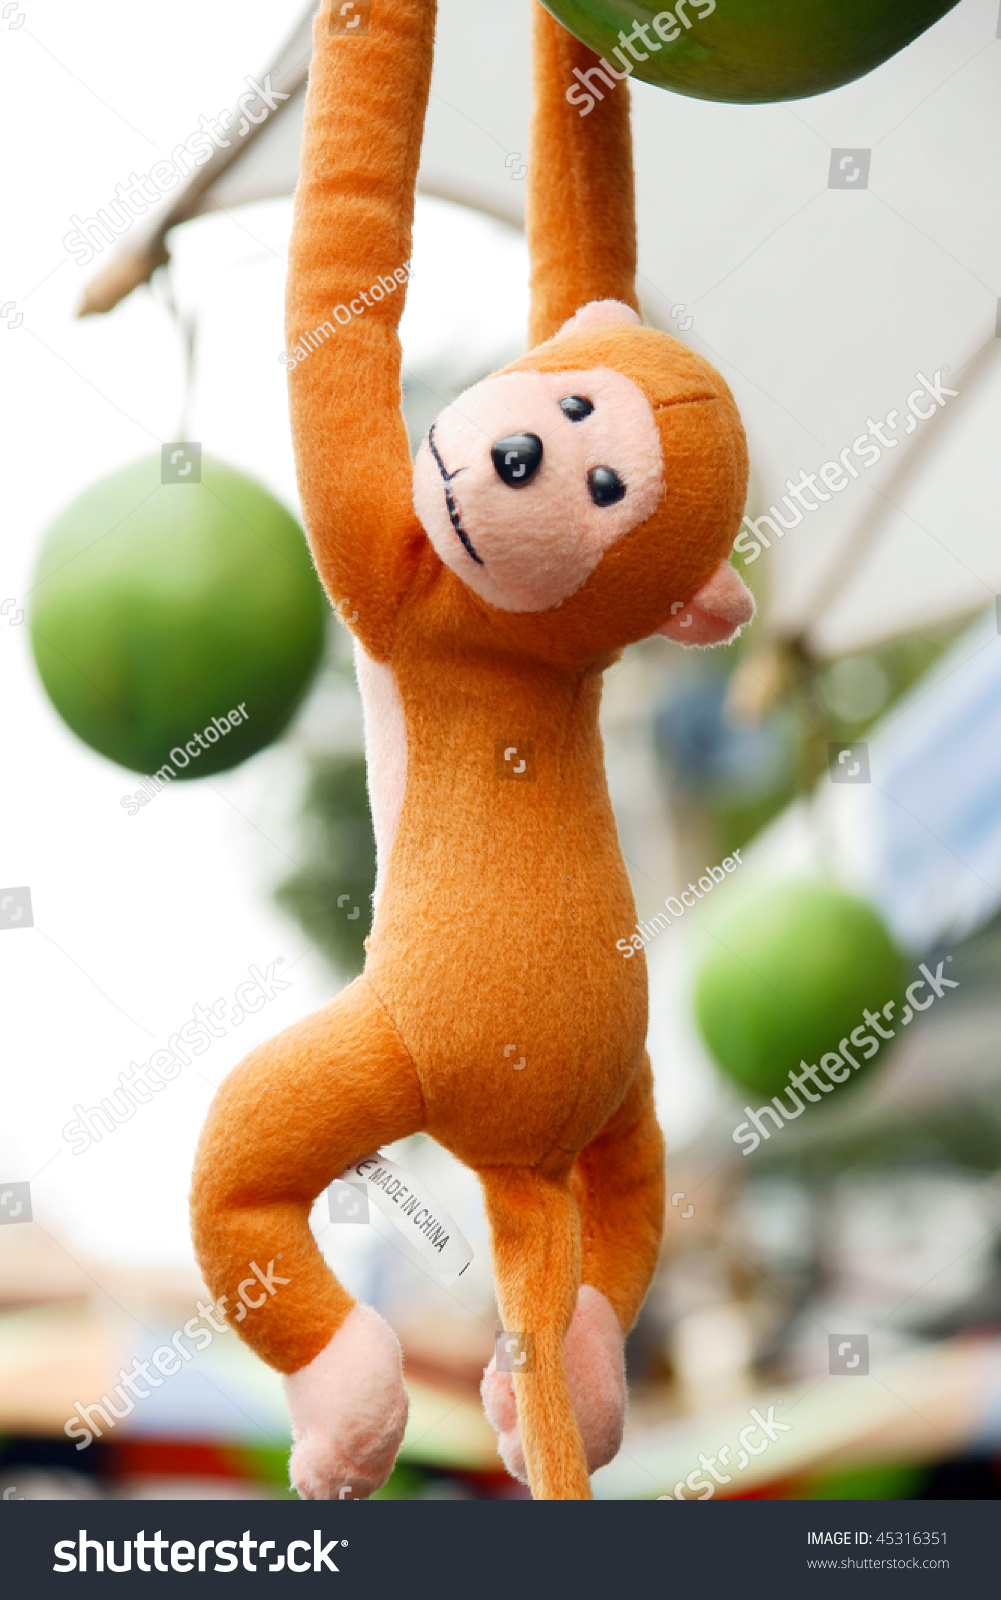 stuffed toy monkeys for sale